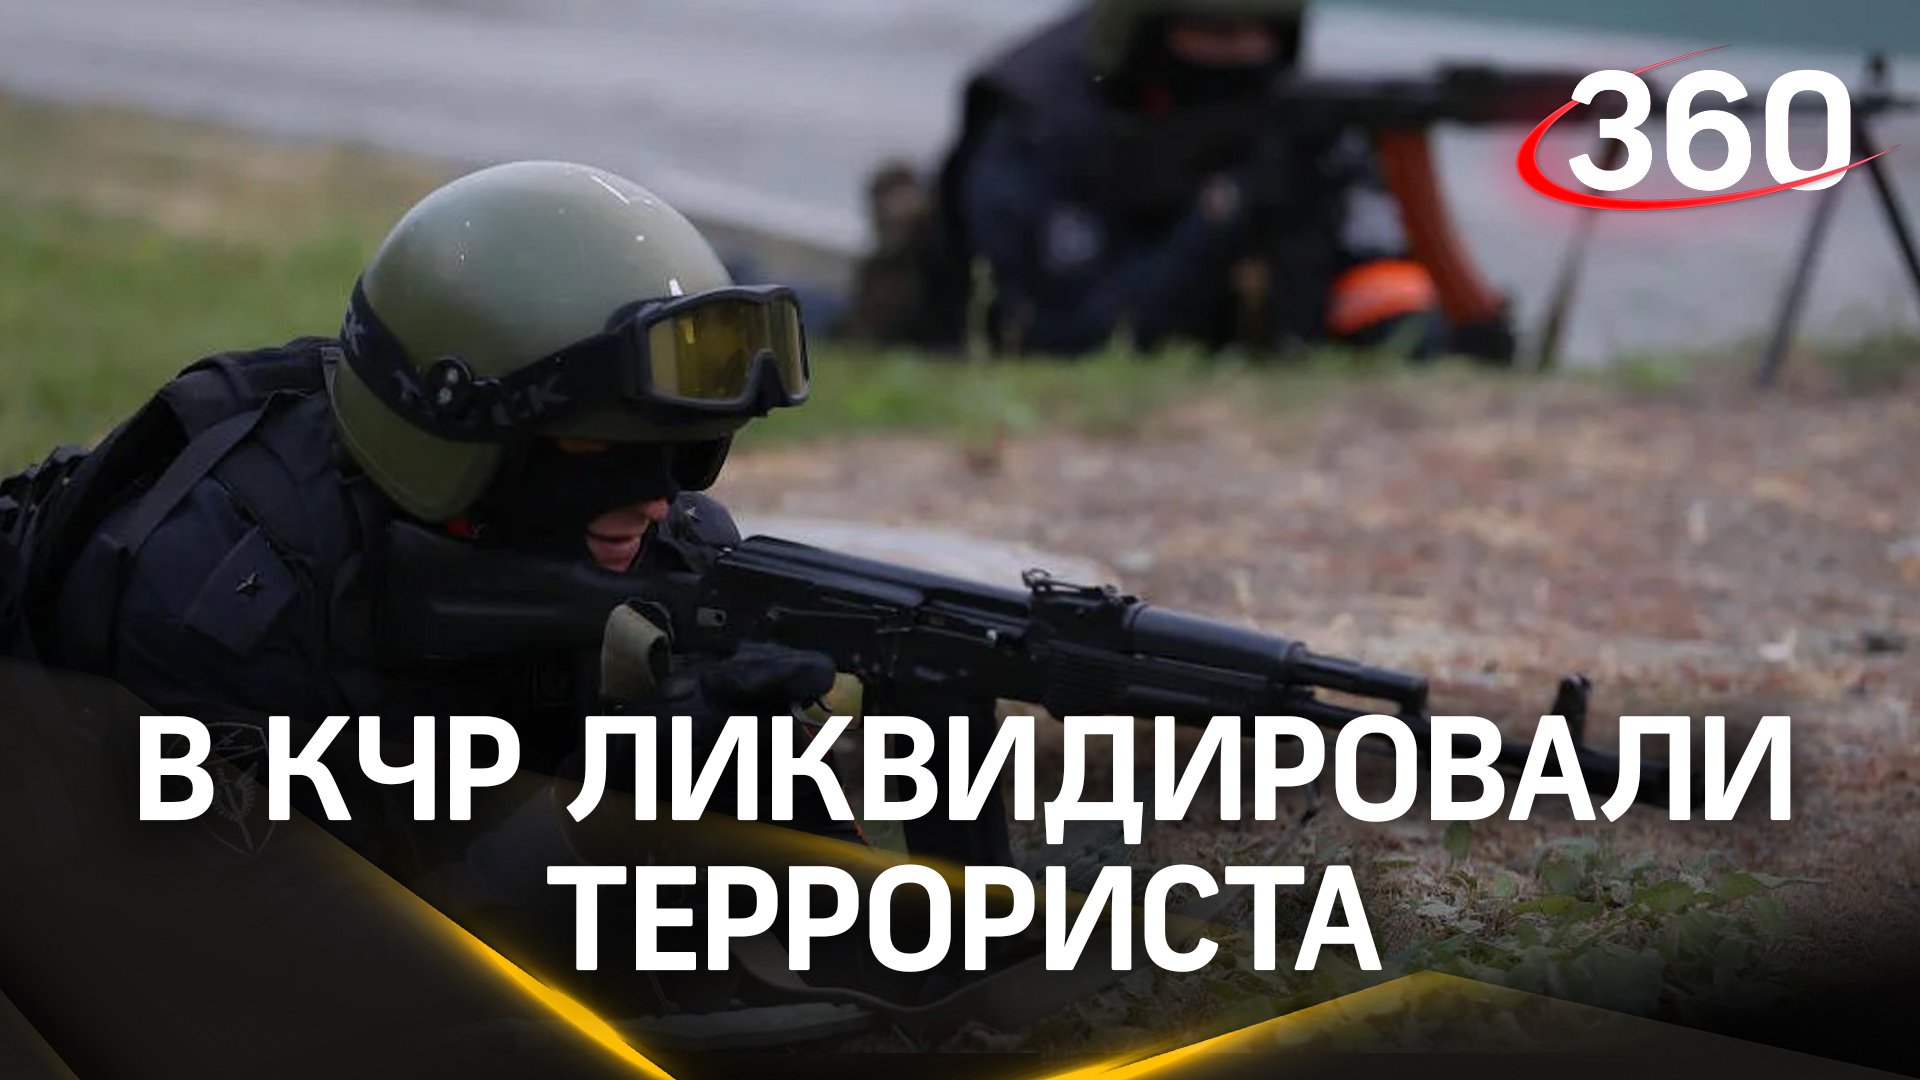 ФСБ ликвидировала террориста в Карачаево-Черкесии. Он планировал убивать полицейских